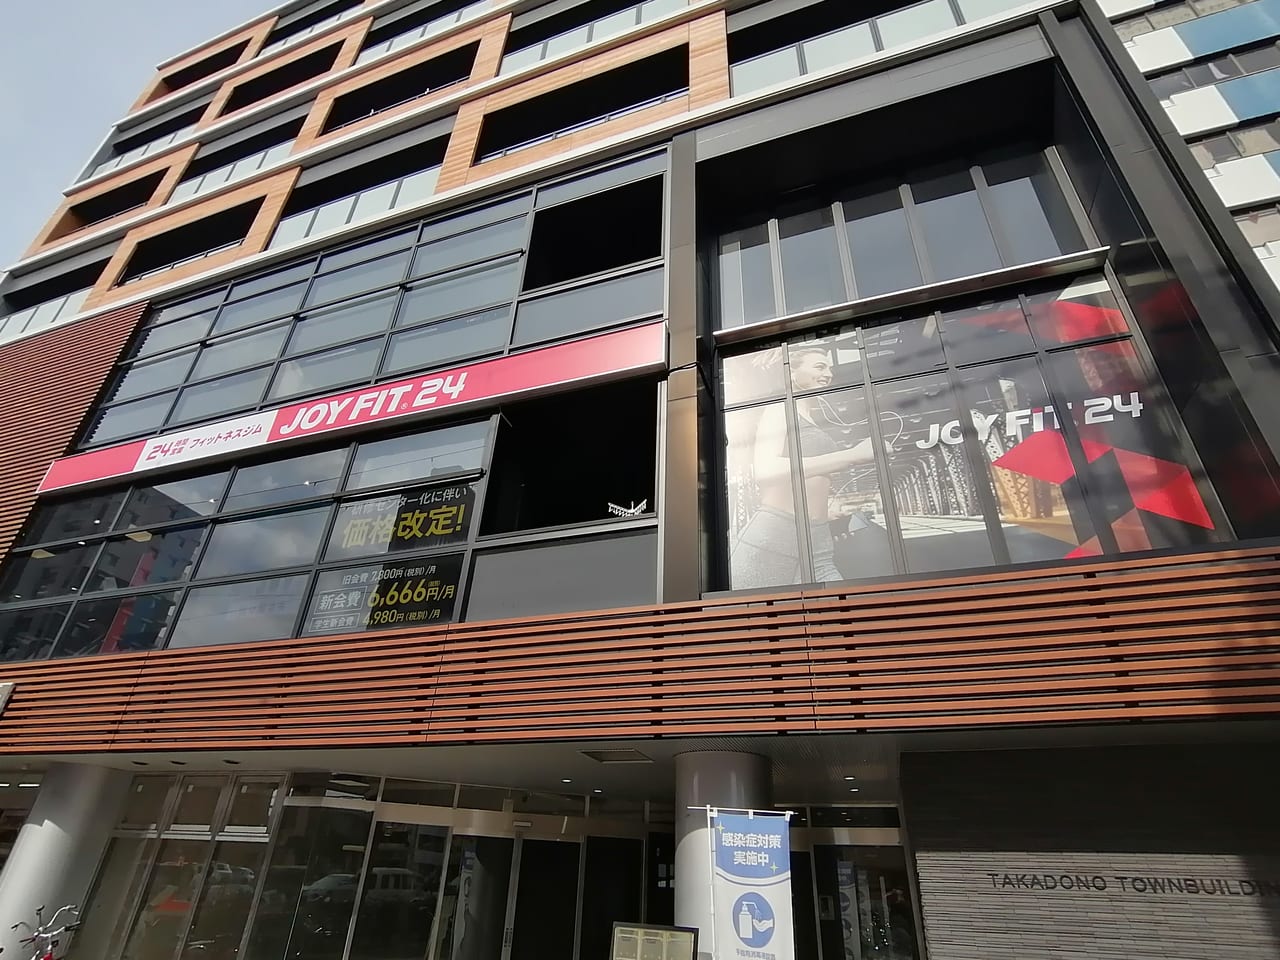 大阪市旭区 24時間営業フィットネスジム Joyfit24 関目高殿 が1月31日で閉店するようです 号外net 都島区 旭区